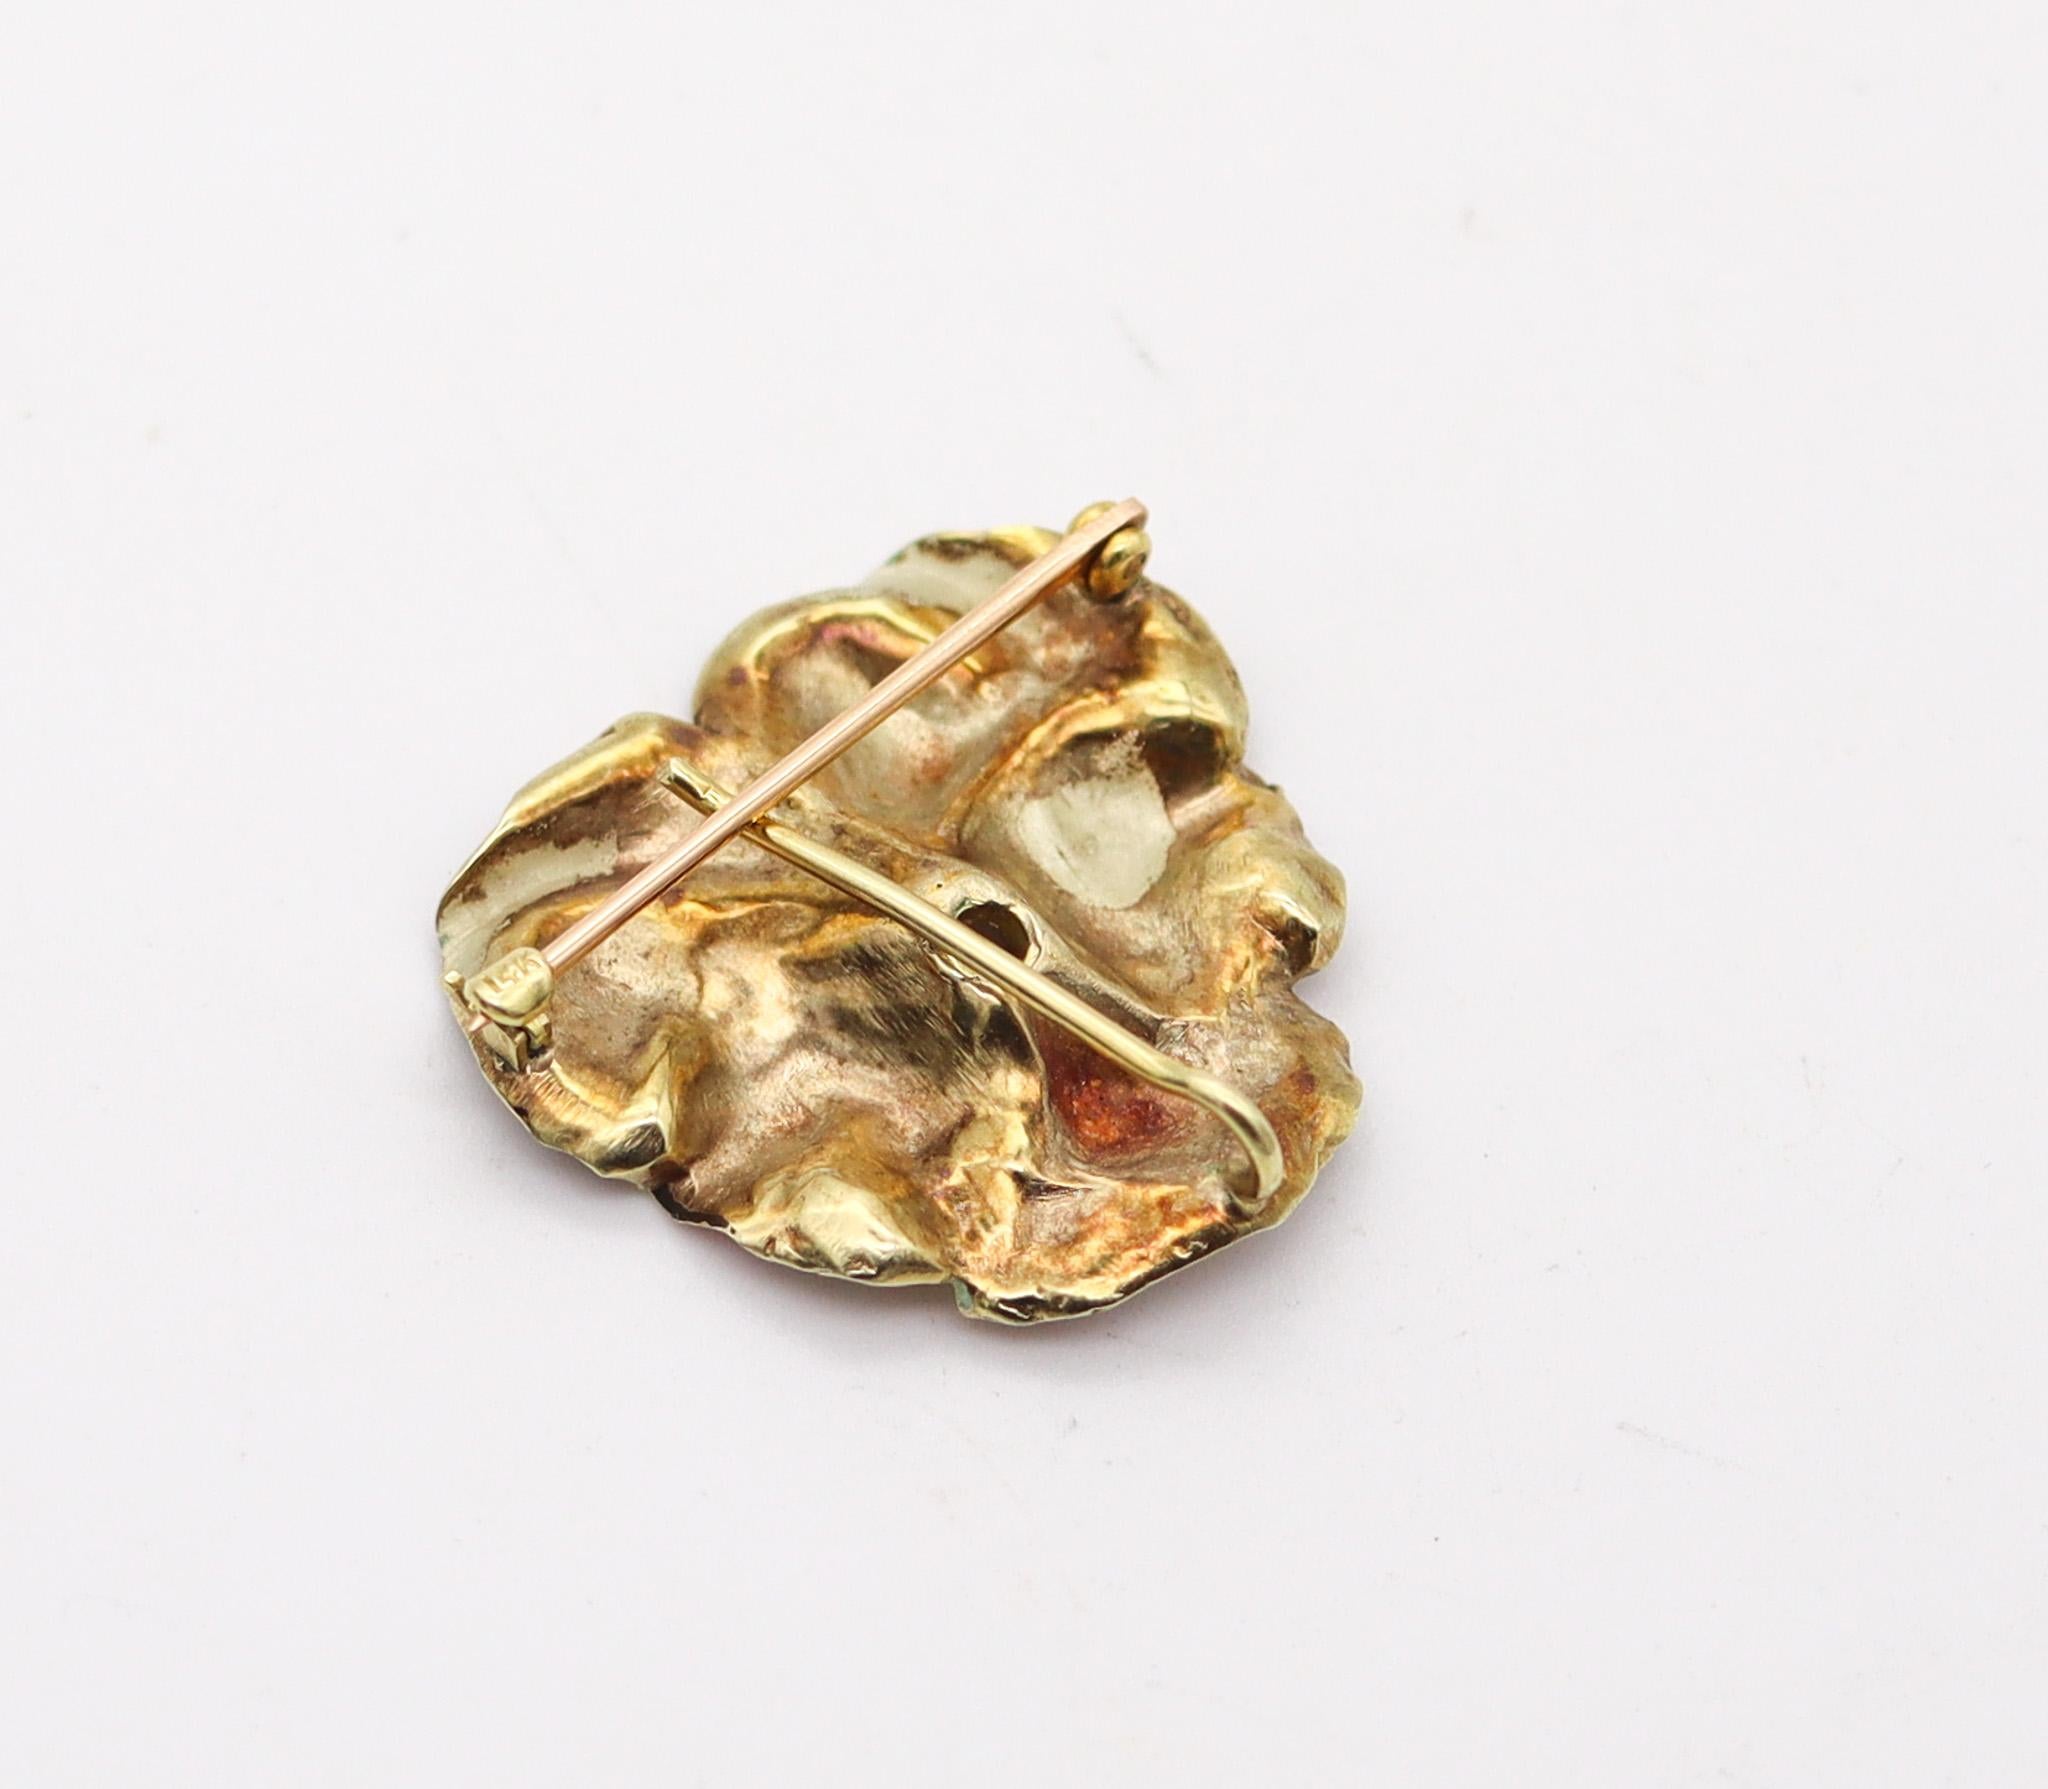 Rough Cut A.J Hedges & Co. 1900 Art Nouveau Enamel Pansy Pendant In 14Kt Gold With Diamond For Sale